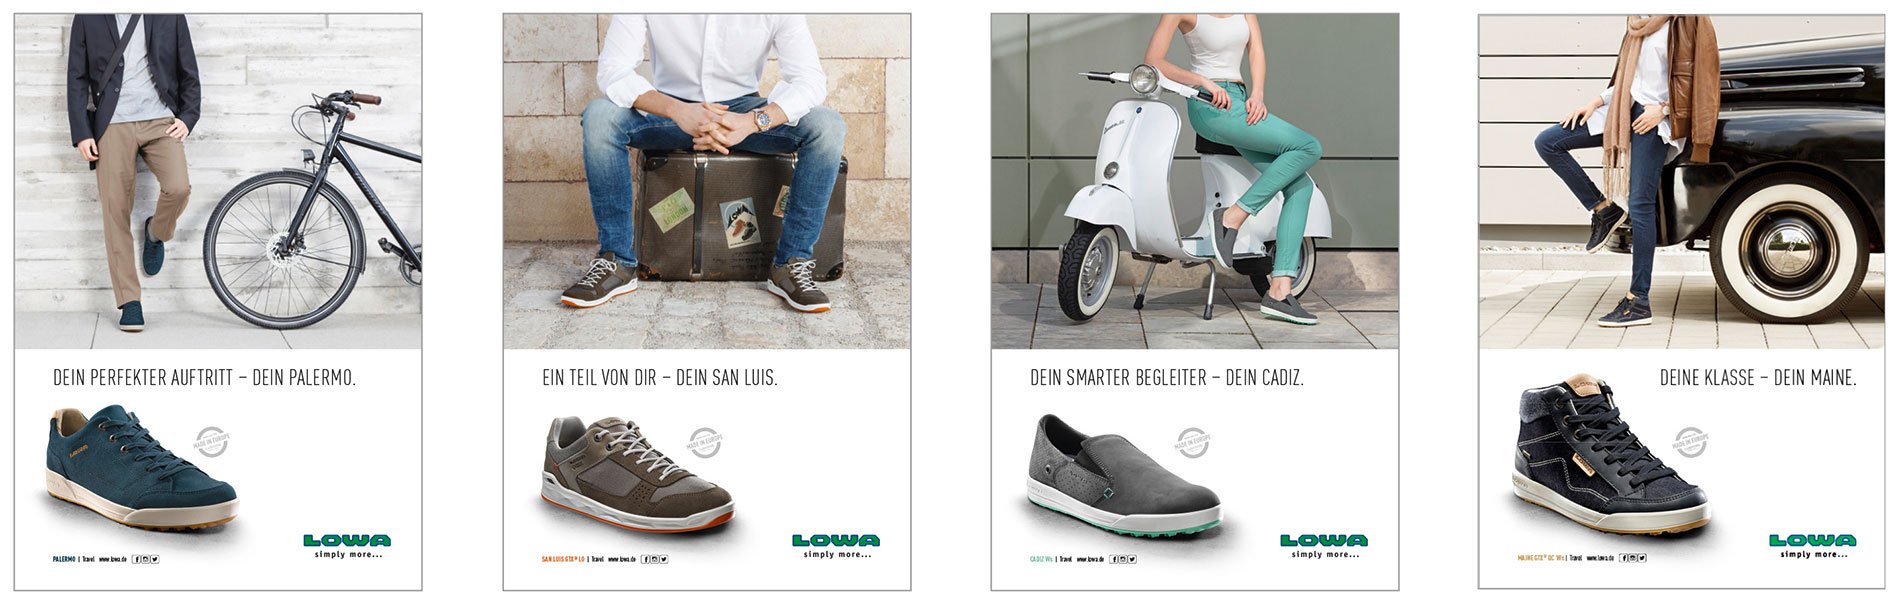 LOWA Travel Kampagne Anzeigen Kollage